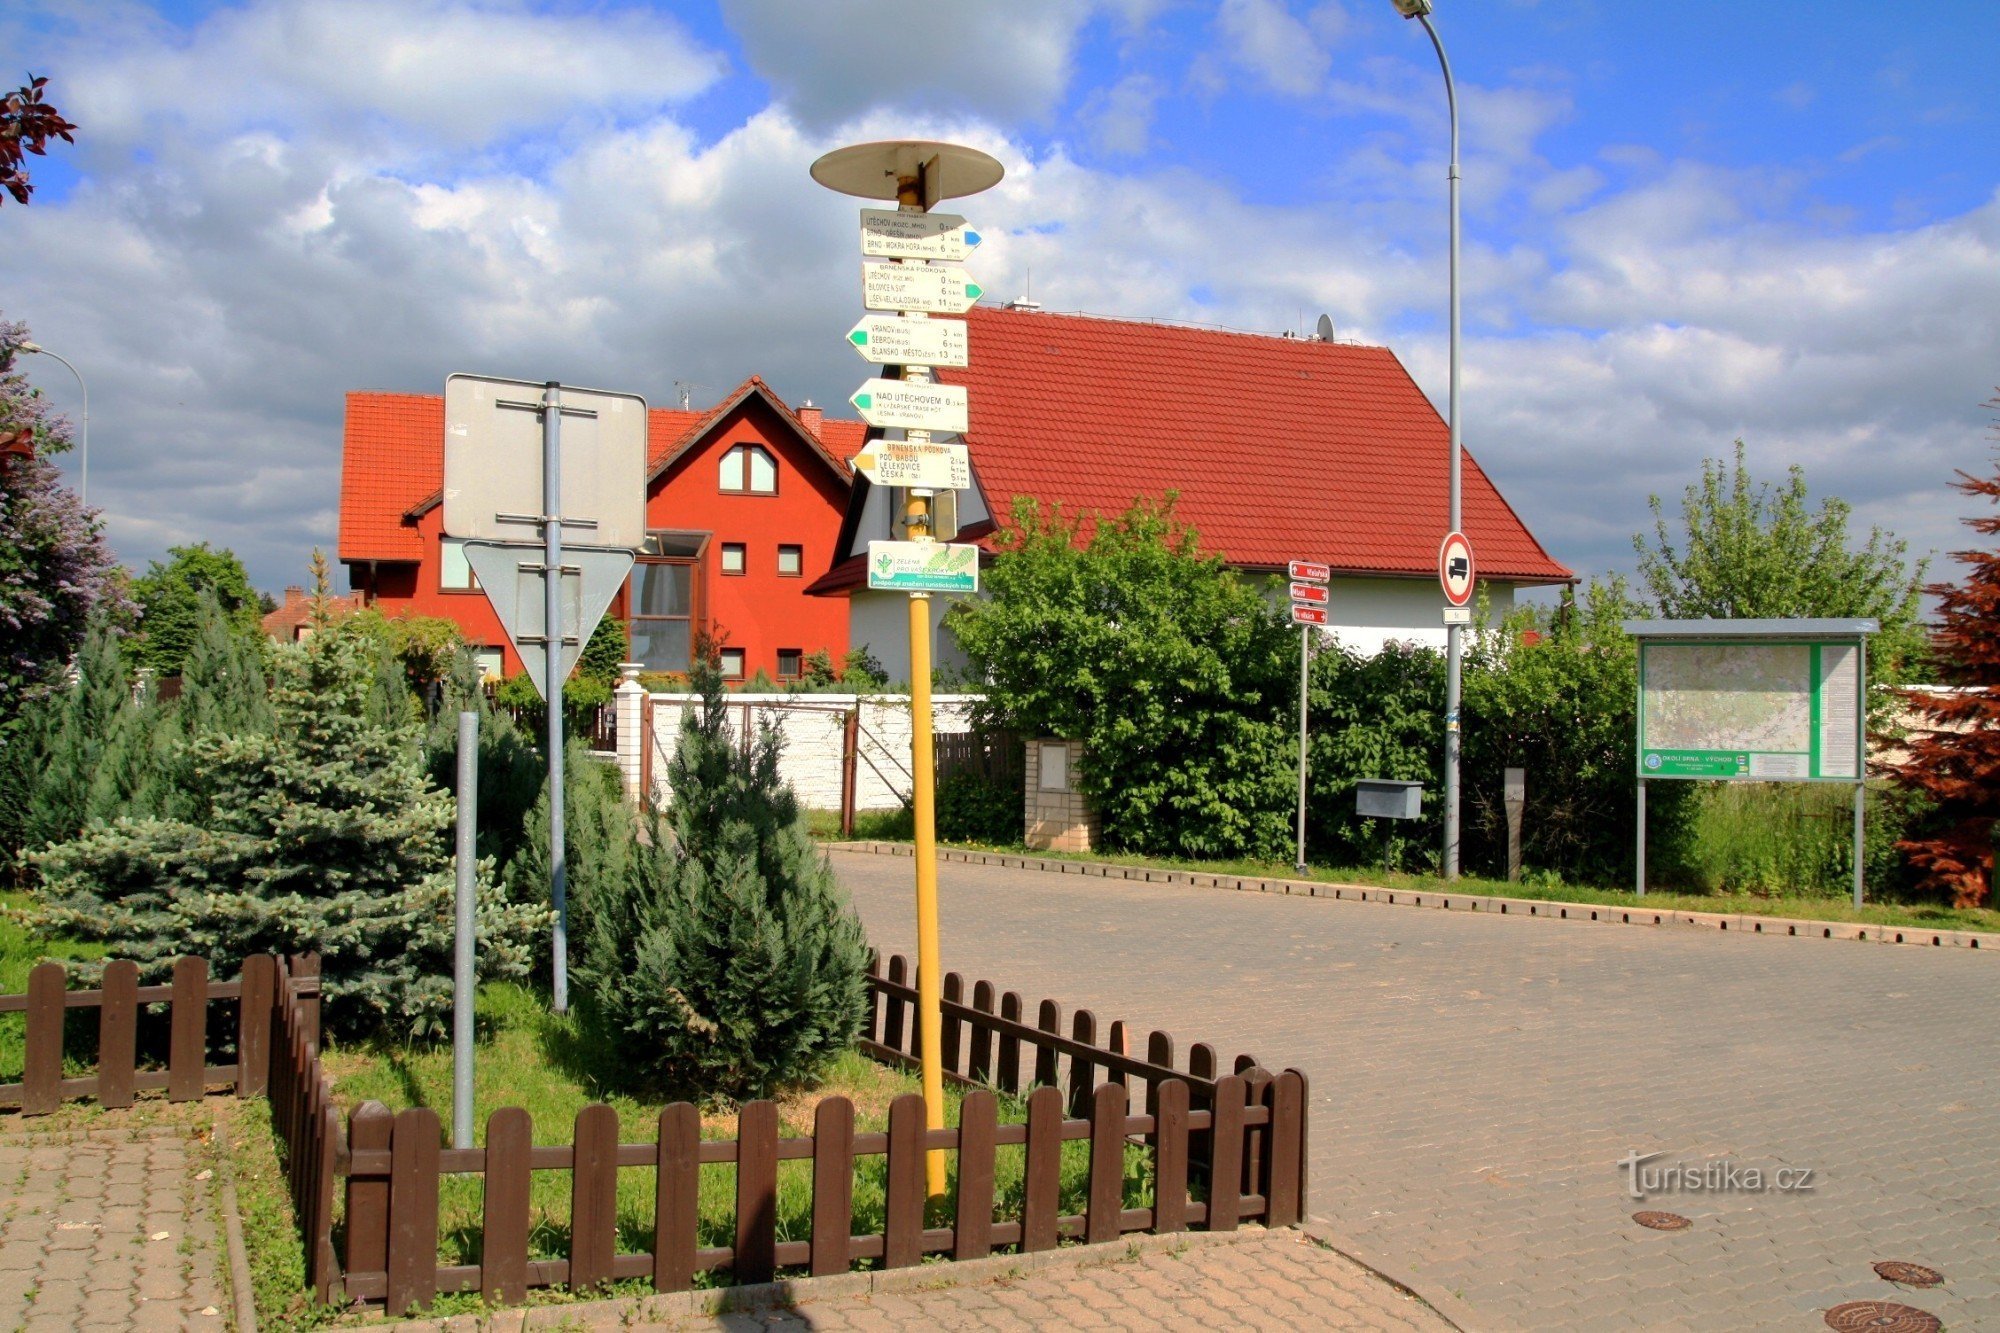 Główny drogowskaz turystyczny w Útěchov